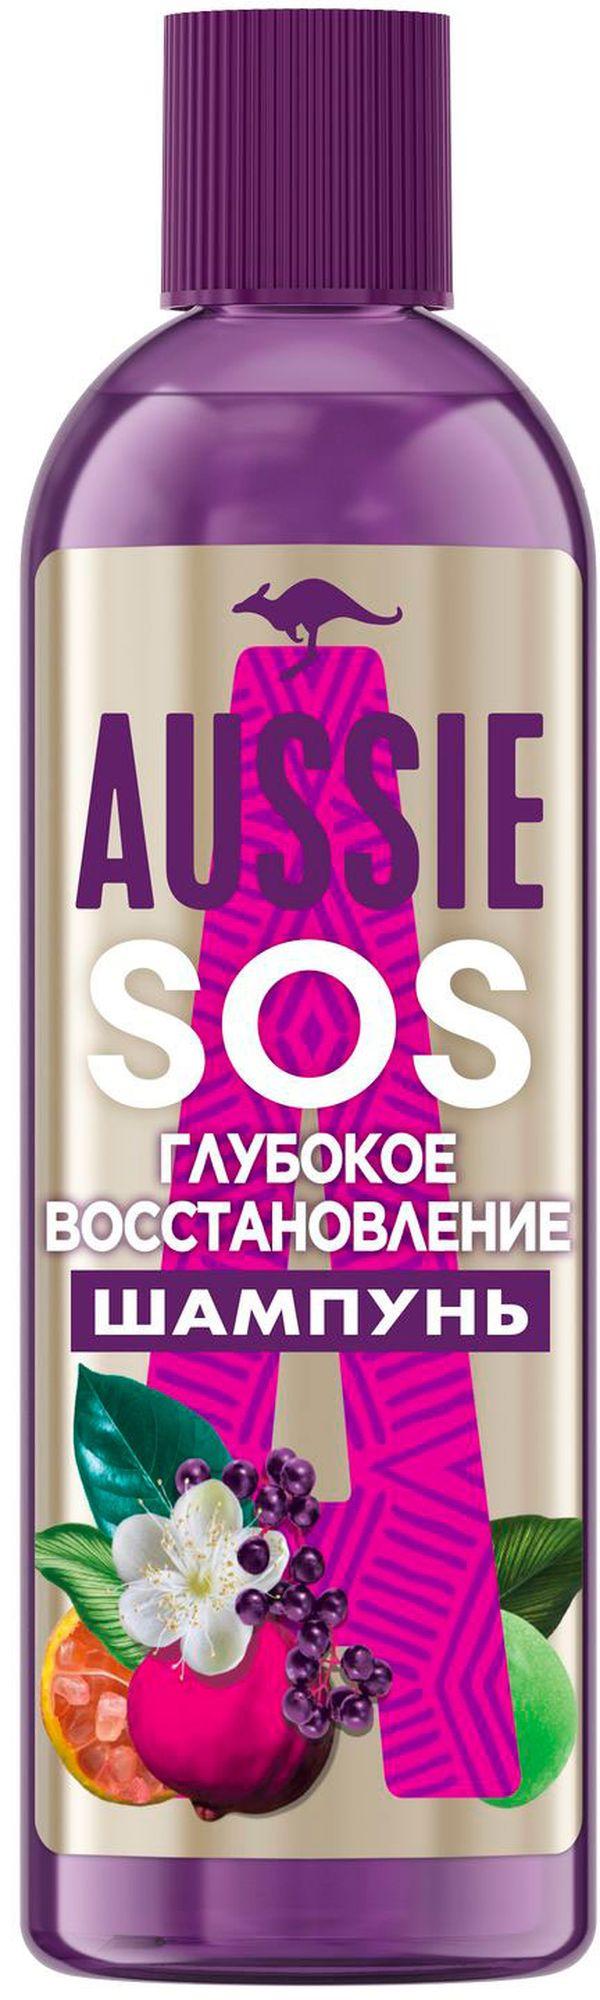 Шампунь для волос Aussie SOS Глубокое восстановление 290мл